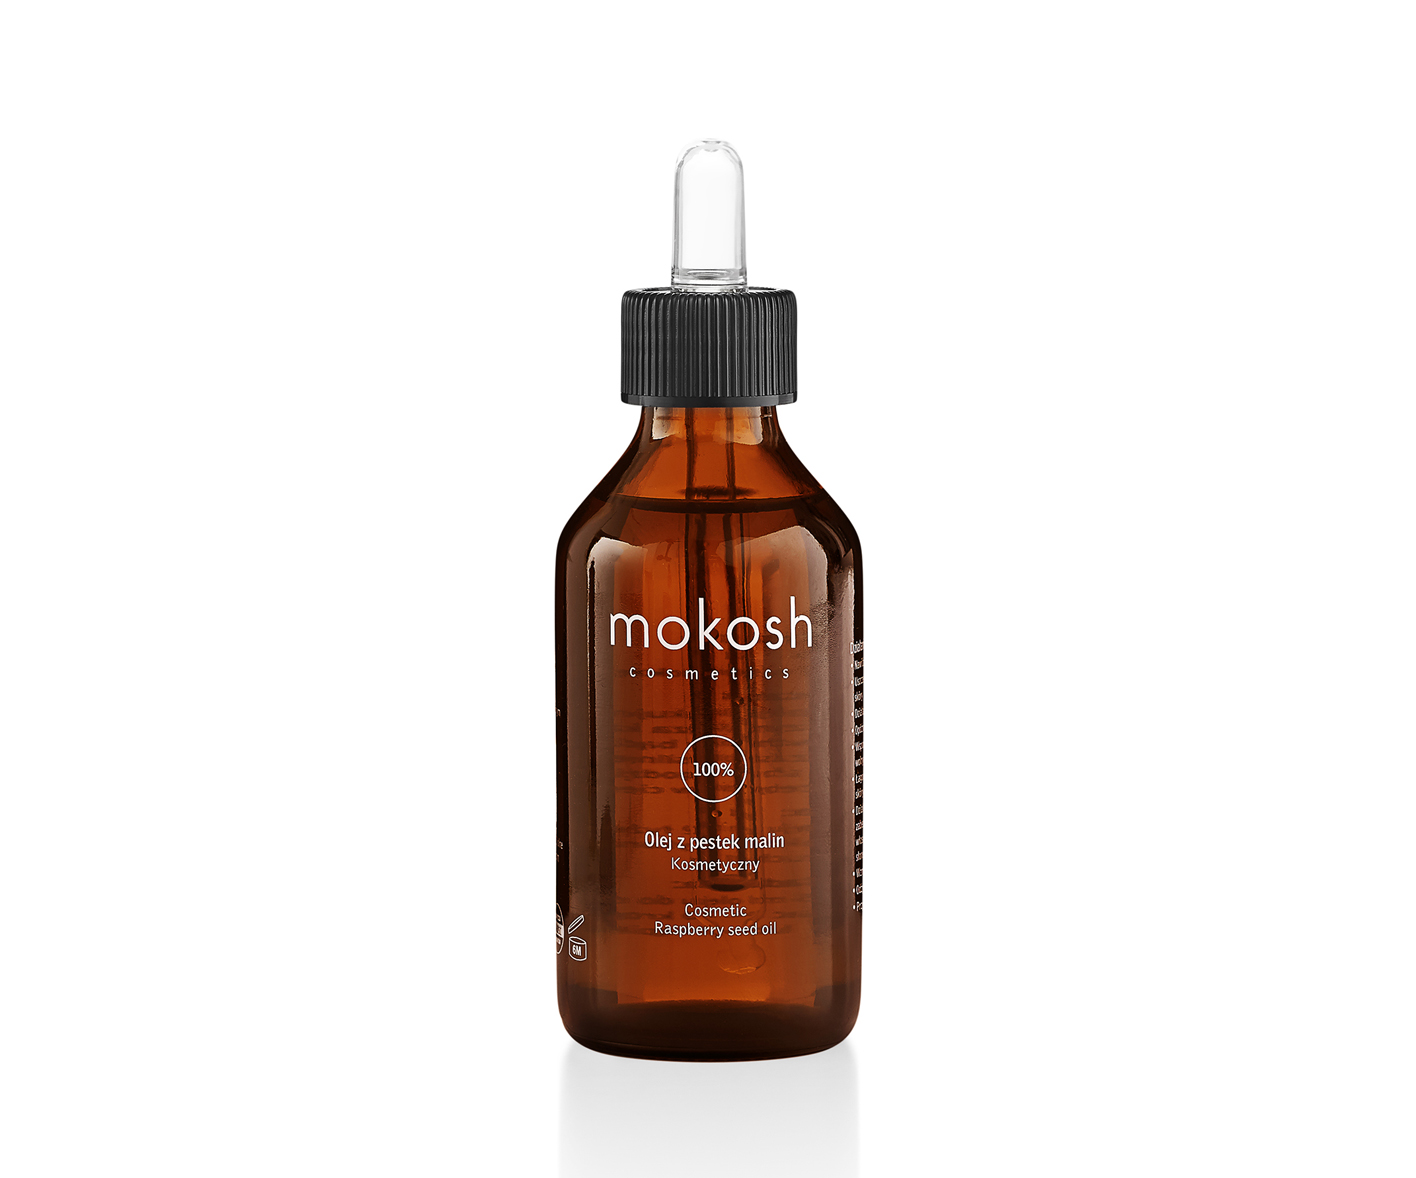  Mokosh Cosmetics, 100% olej z pestek malin